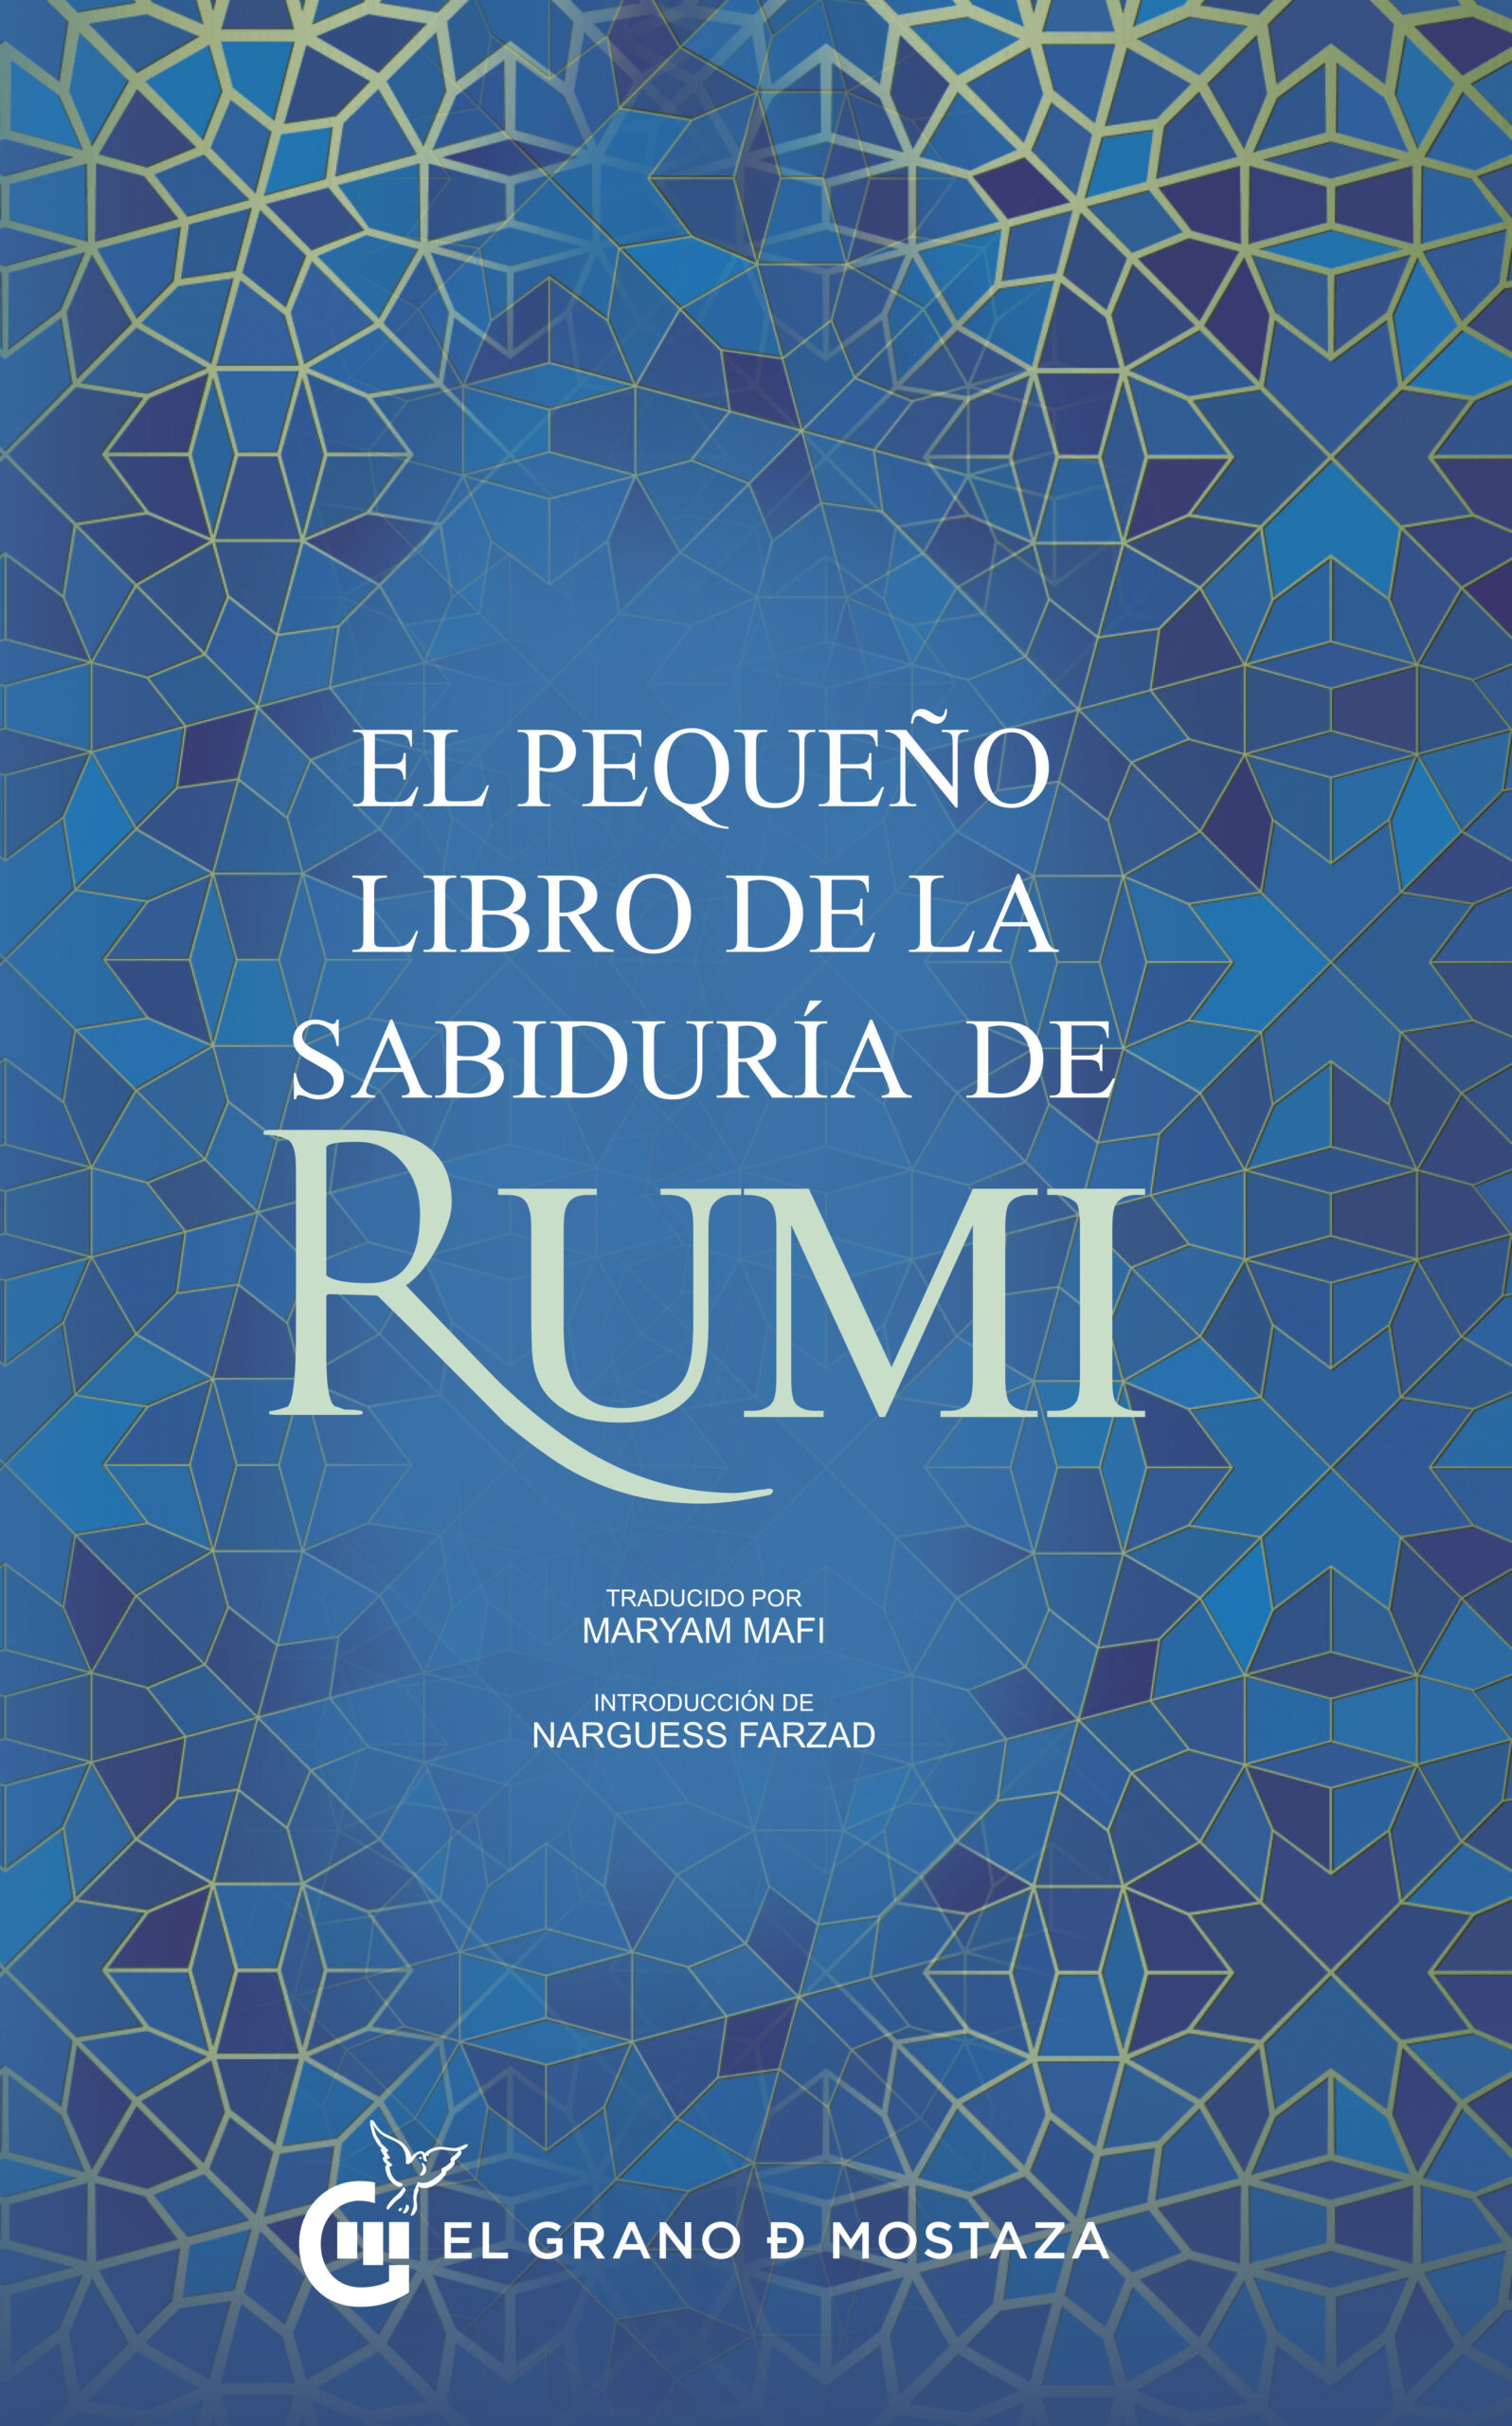 Portada libro de la sabiduría de Rumi